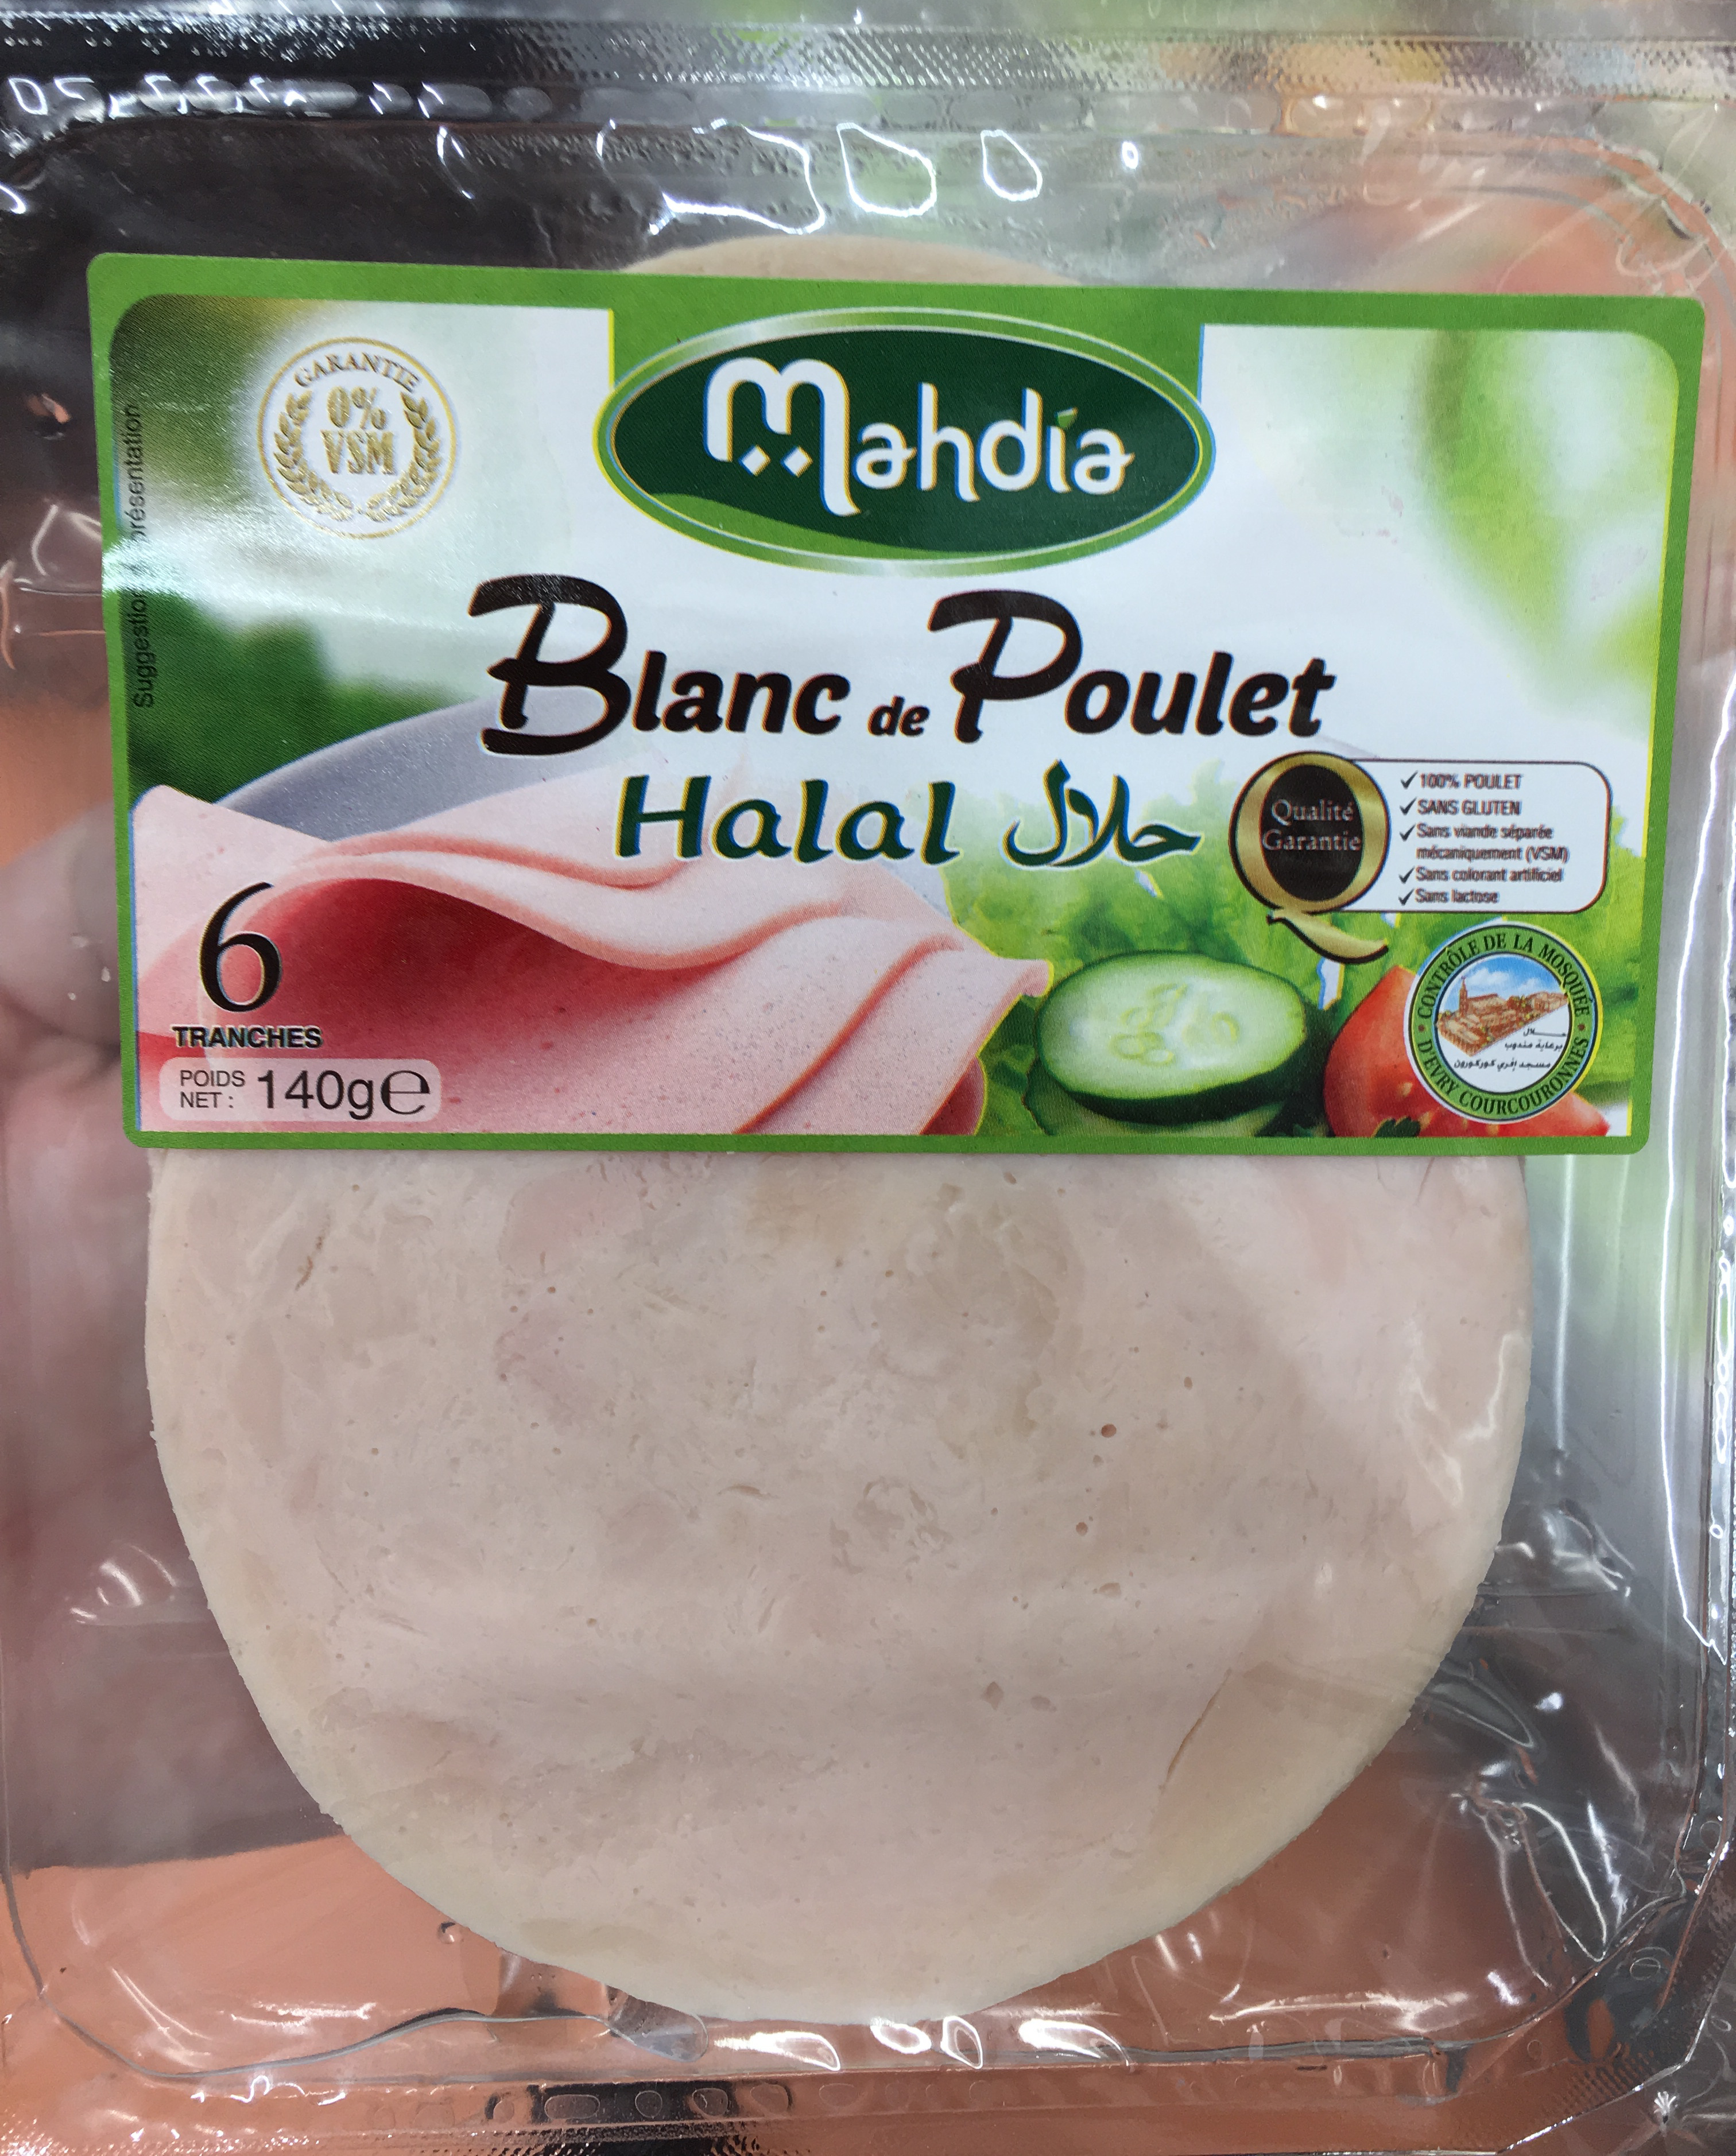 Blanc de poulet halal - Product - fr